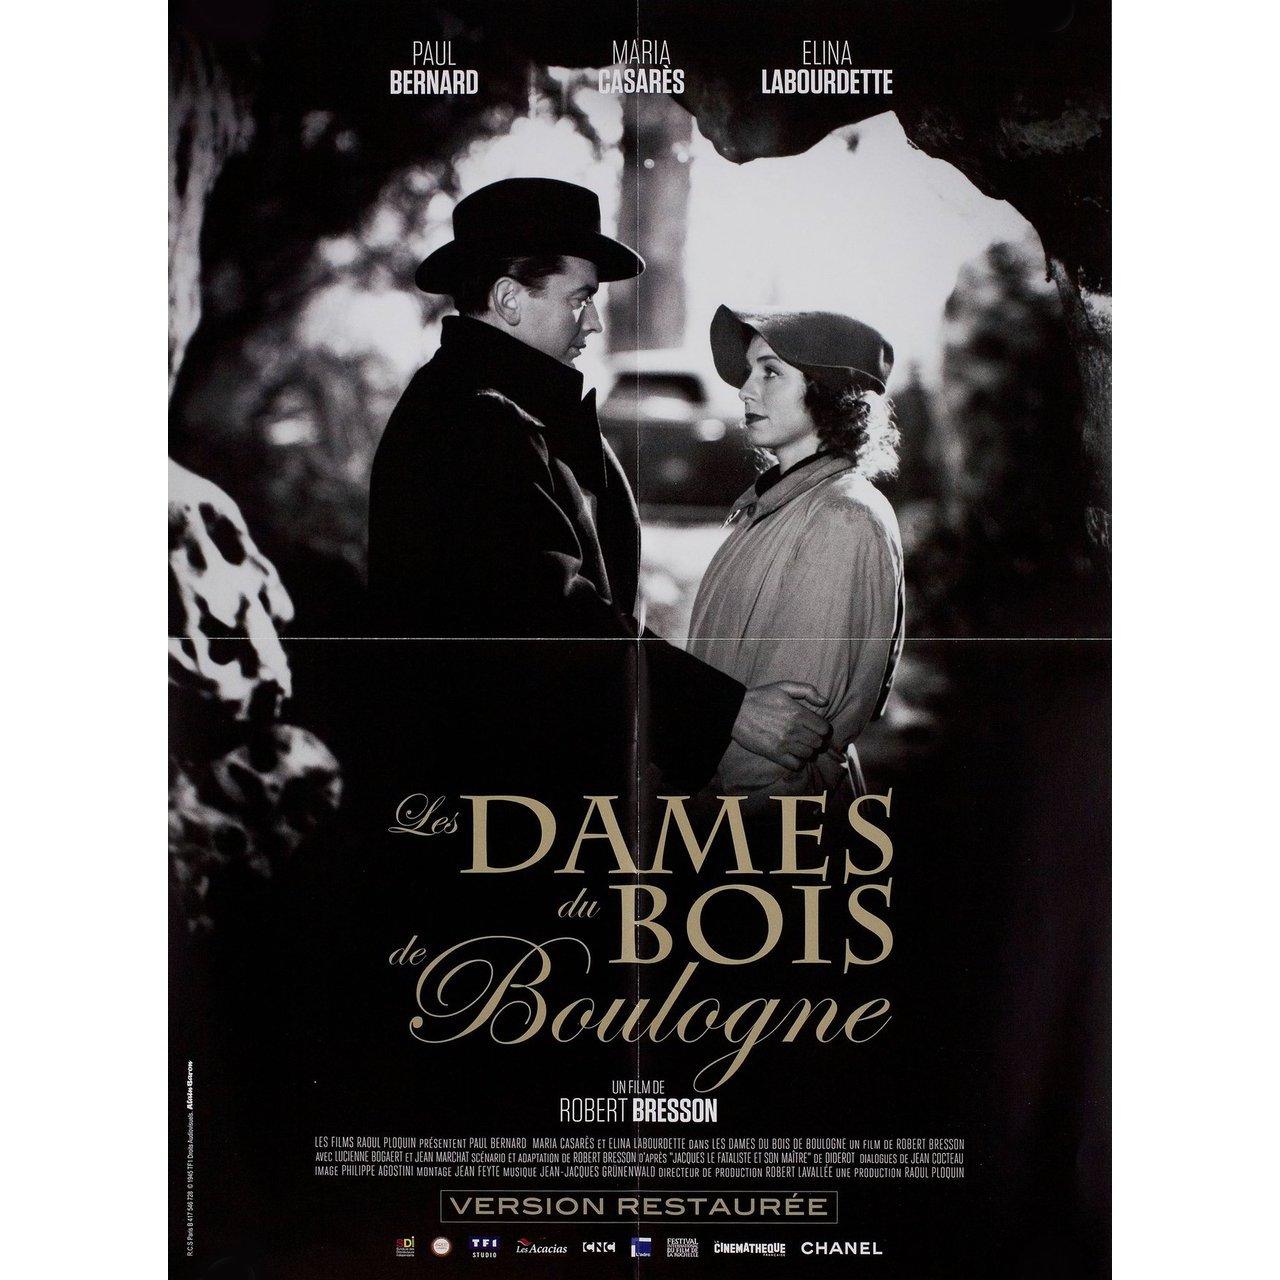 Originales französisches Kleinplakat aus den 2010er Jahren für den Film Les dames du Bois de Boulogne (Die Damen vom Bois de Boulogne) von Robert Bresson aus dem Jahr 1945 mit Paul Bernard / Maria Casares / Elina Labourdette / Lucienne Bogaert.